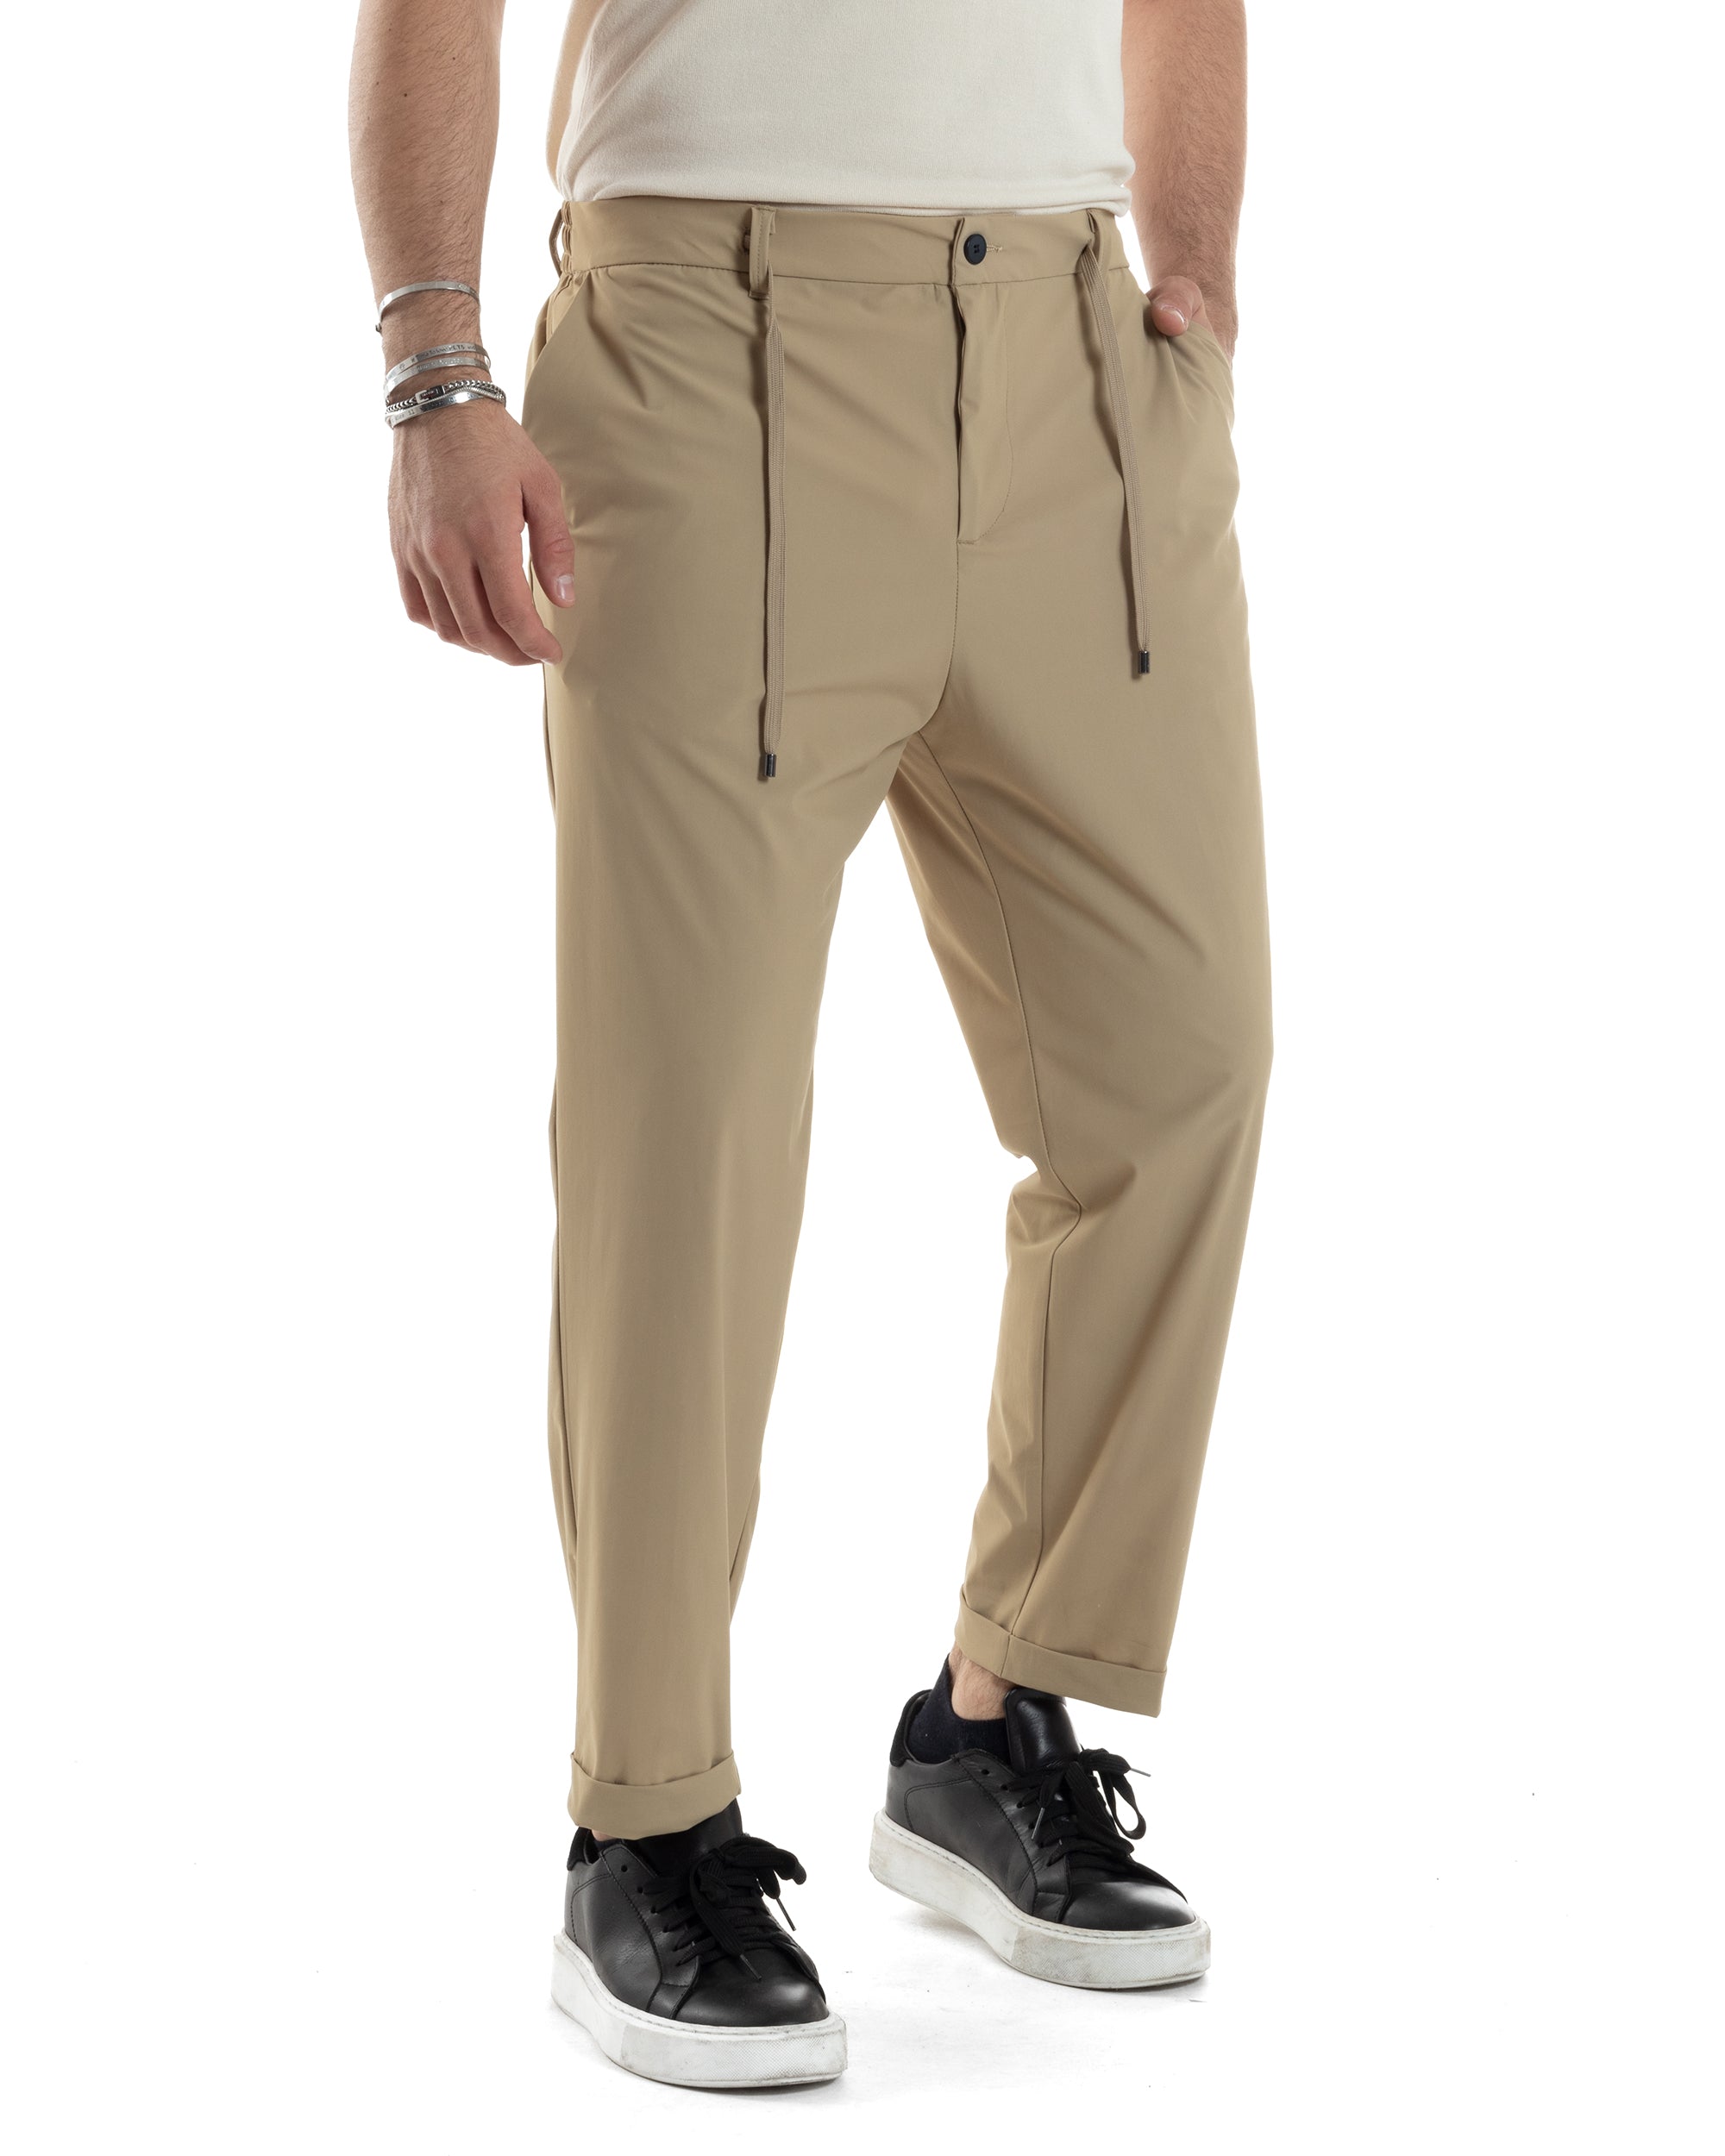 Pantaloni Uomo Tasca America Classico Tessuto Tecnico No Stiro Antipioggia Casual Beige GIOSAL-P6100A